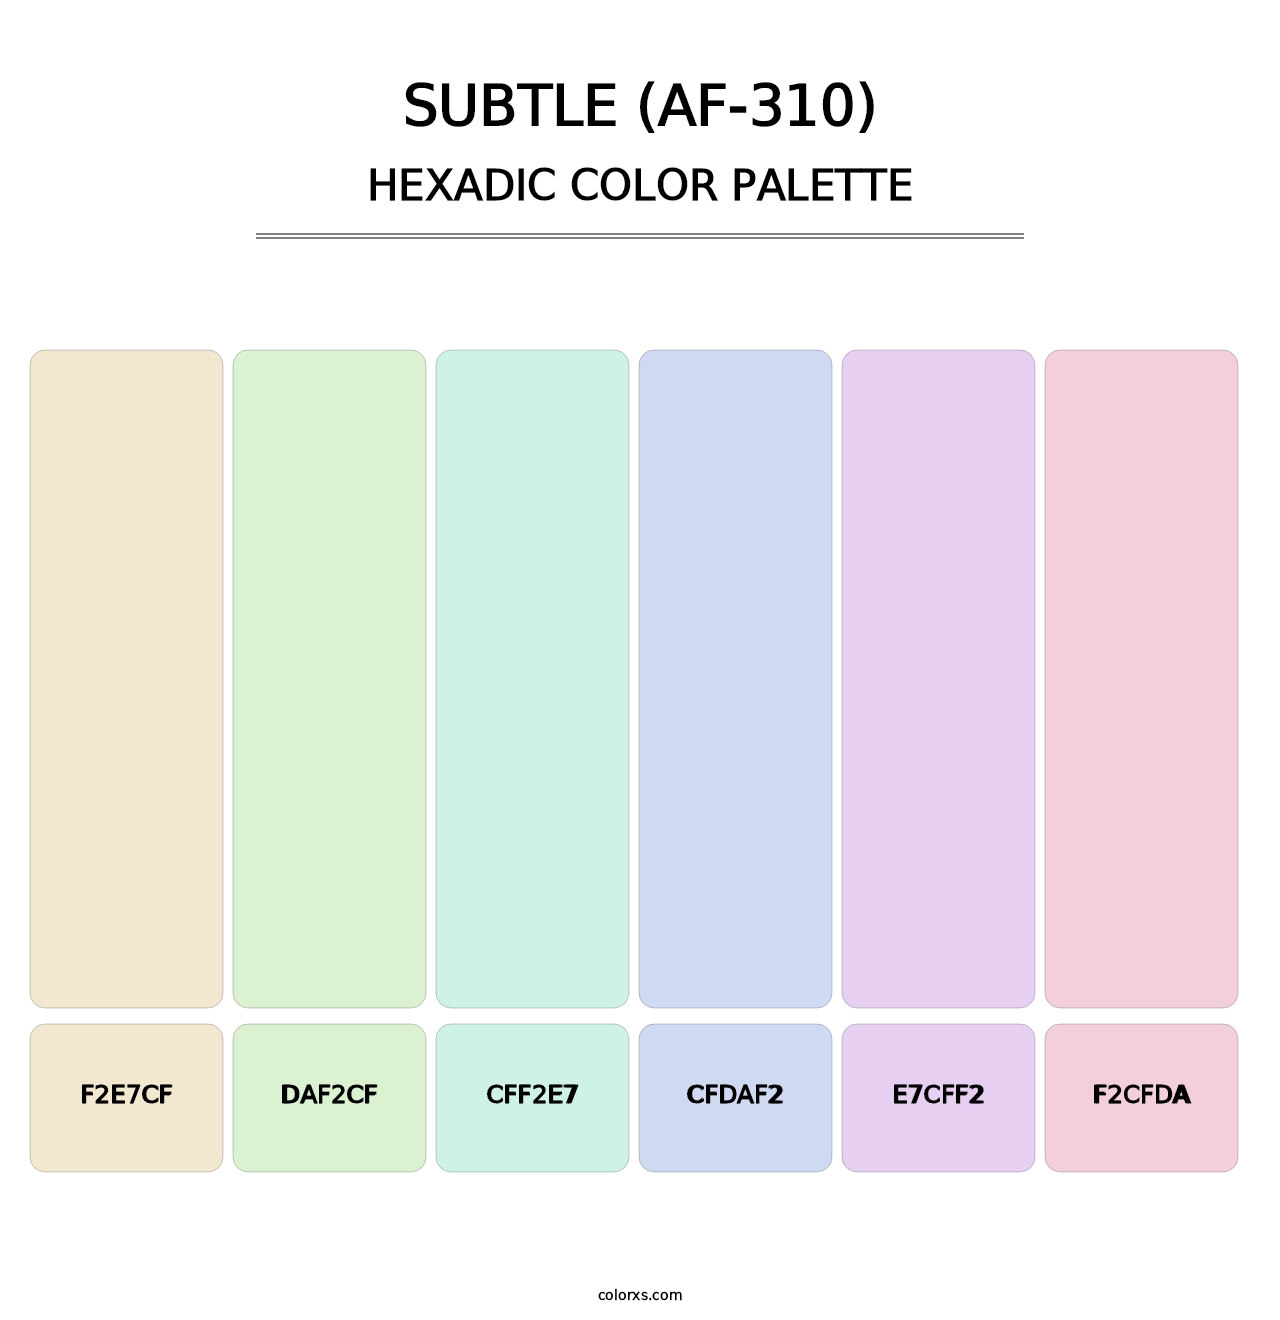 Subtle (AF-310) - Hexadic Color Palette